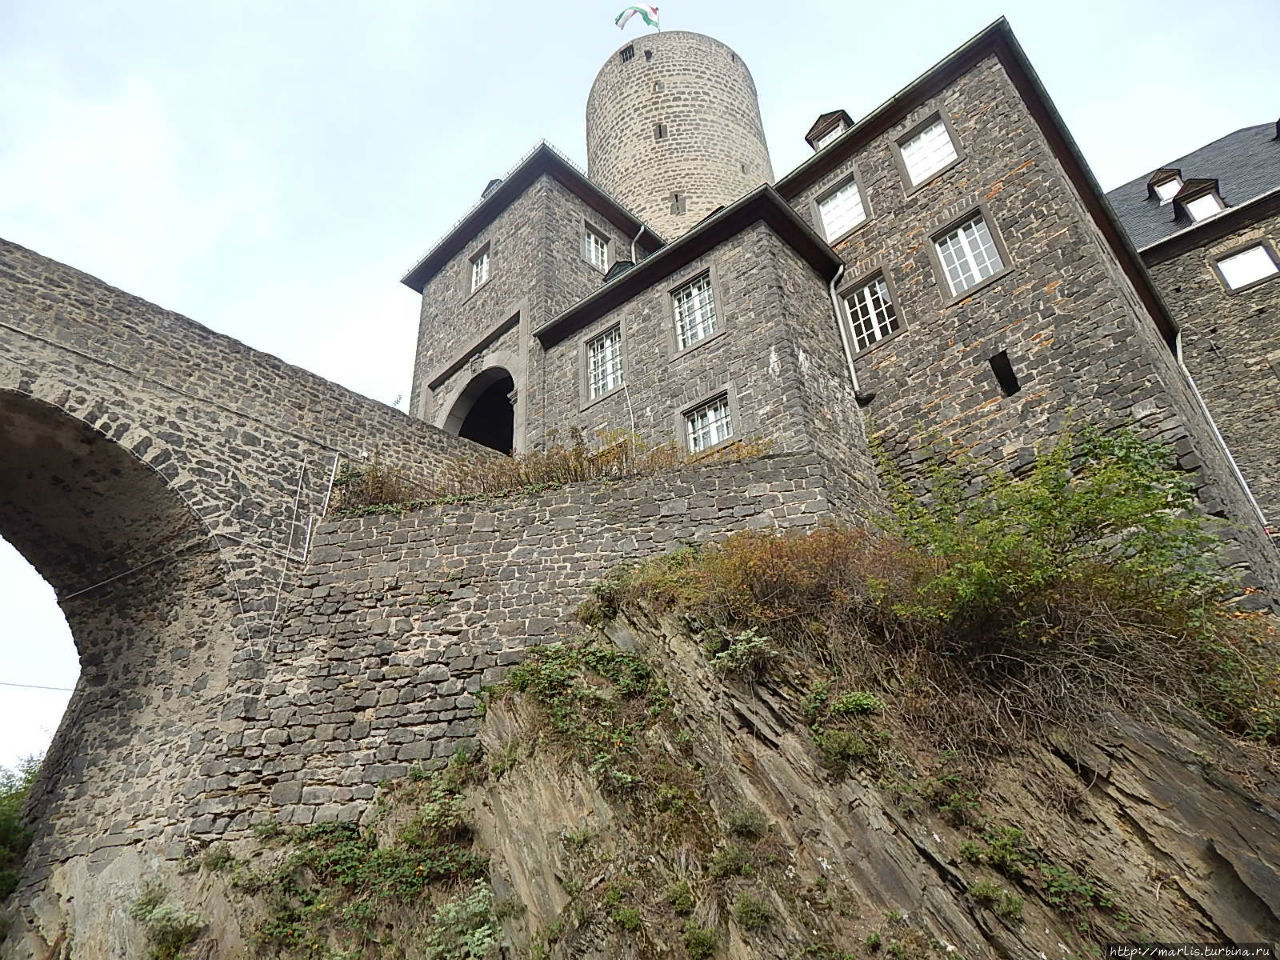 Майeн, замок Женевьевабург, для постройки использовался вулканический туфф и базальт Майен, Германия